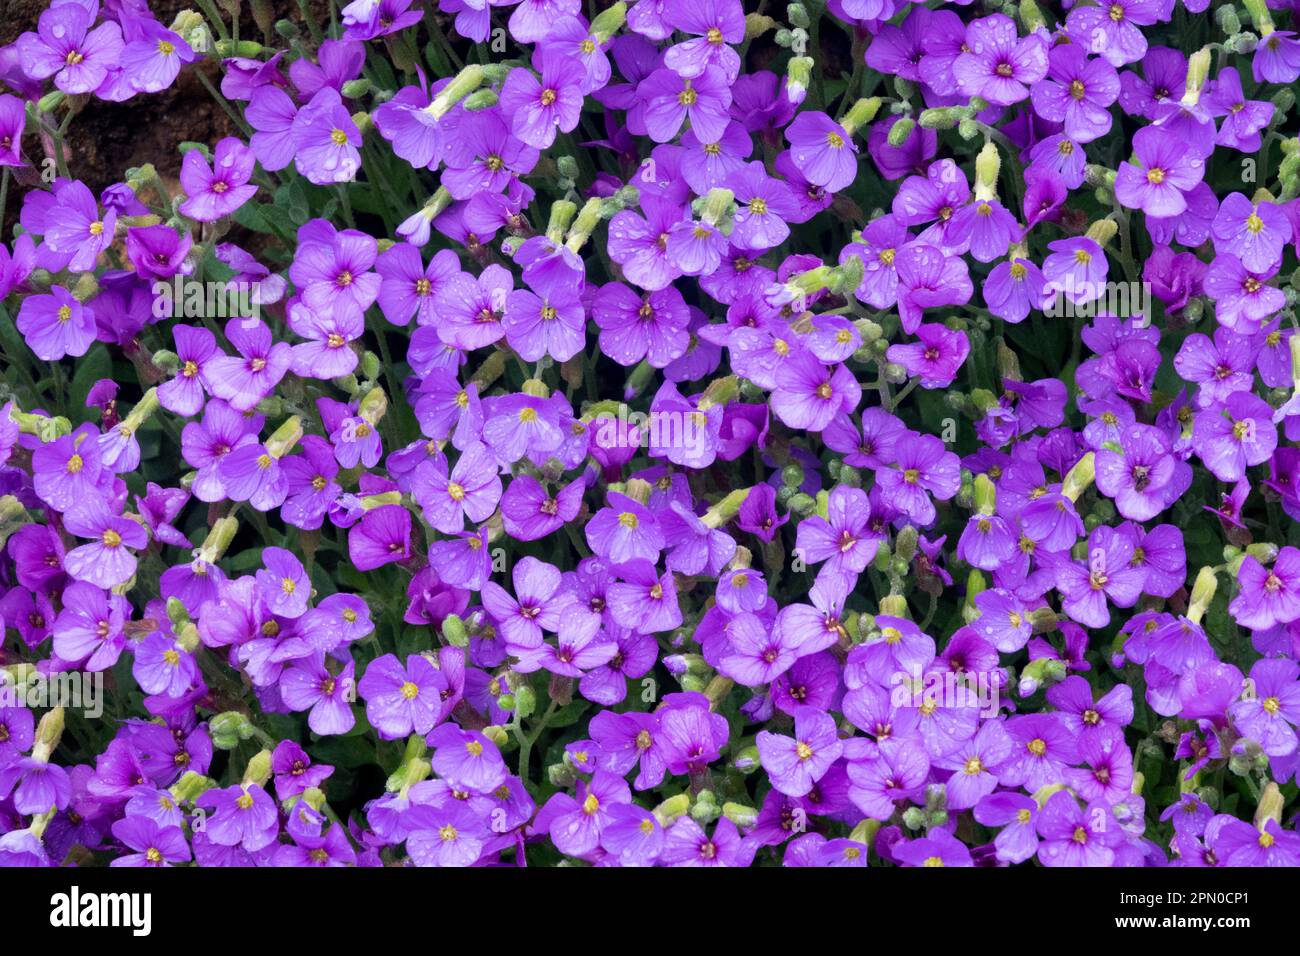 Alpin, Aubrietas, April, Aubrieta, Blumen, Rock Cress Blue Stockfoto